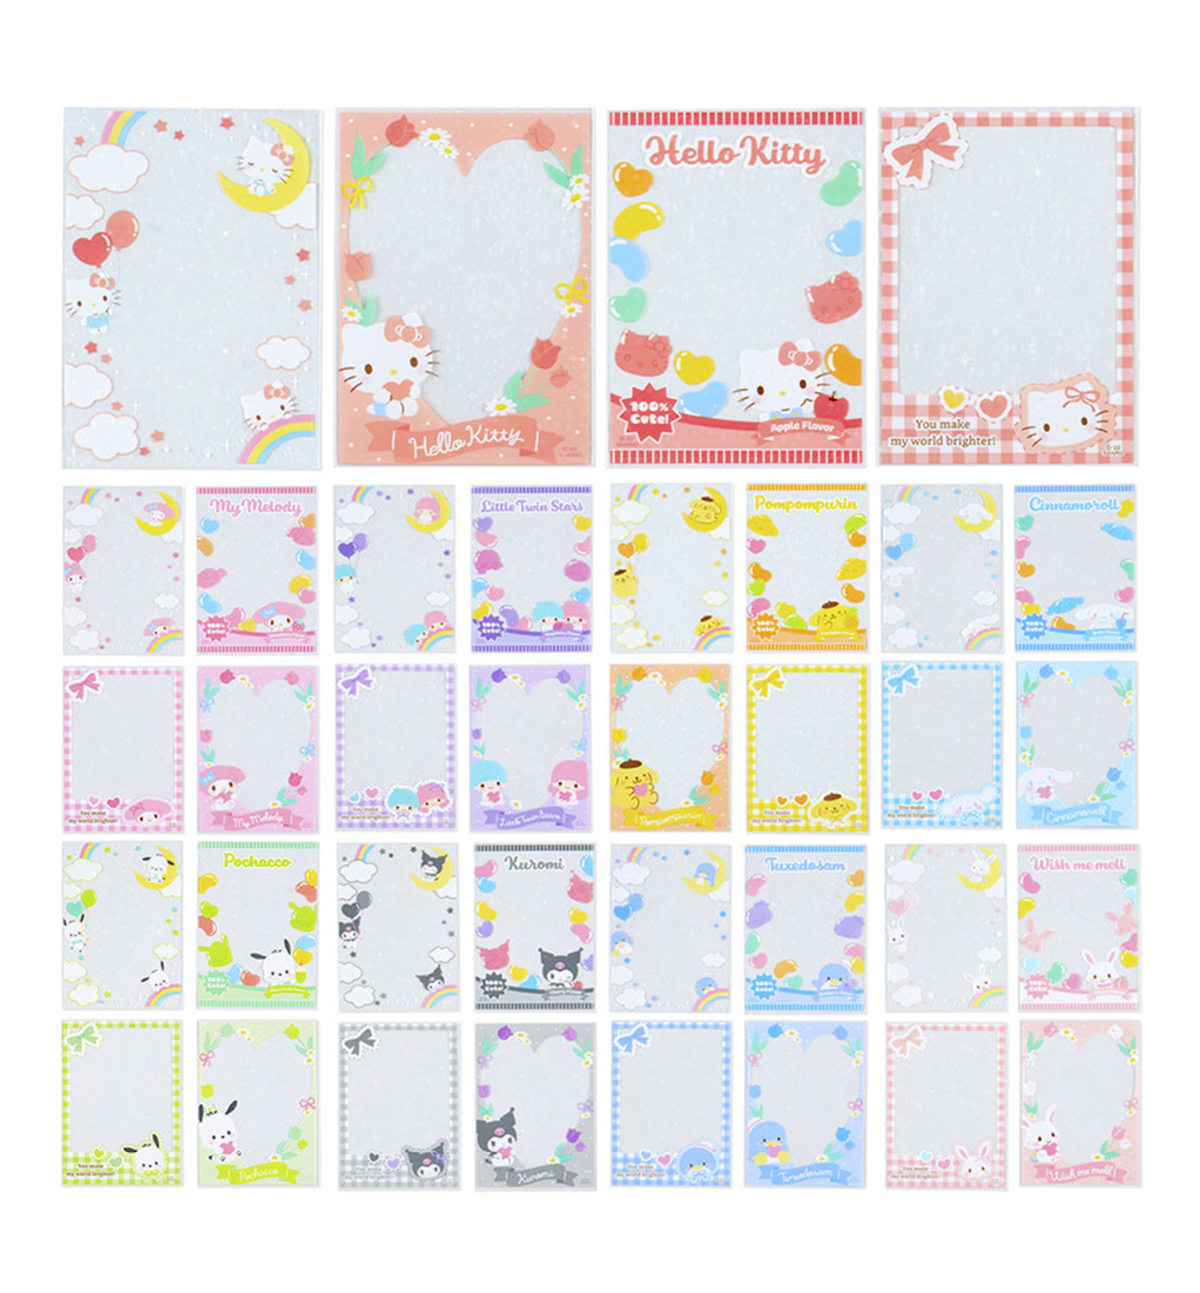 Sanrio Fabric Photocard Holder (Enjoy Idol)